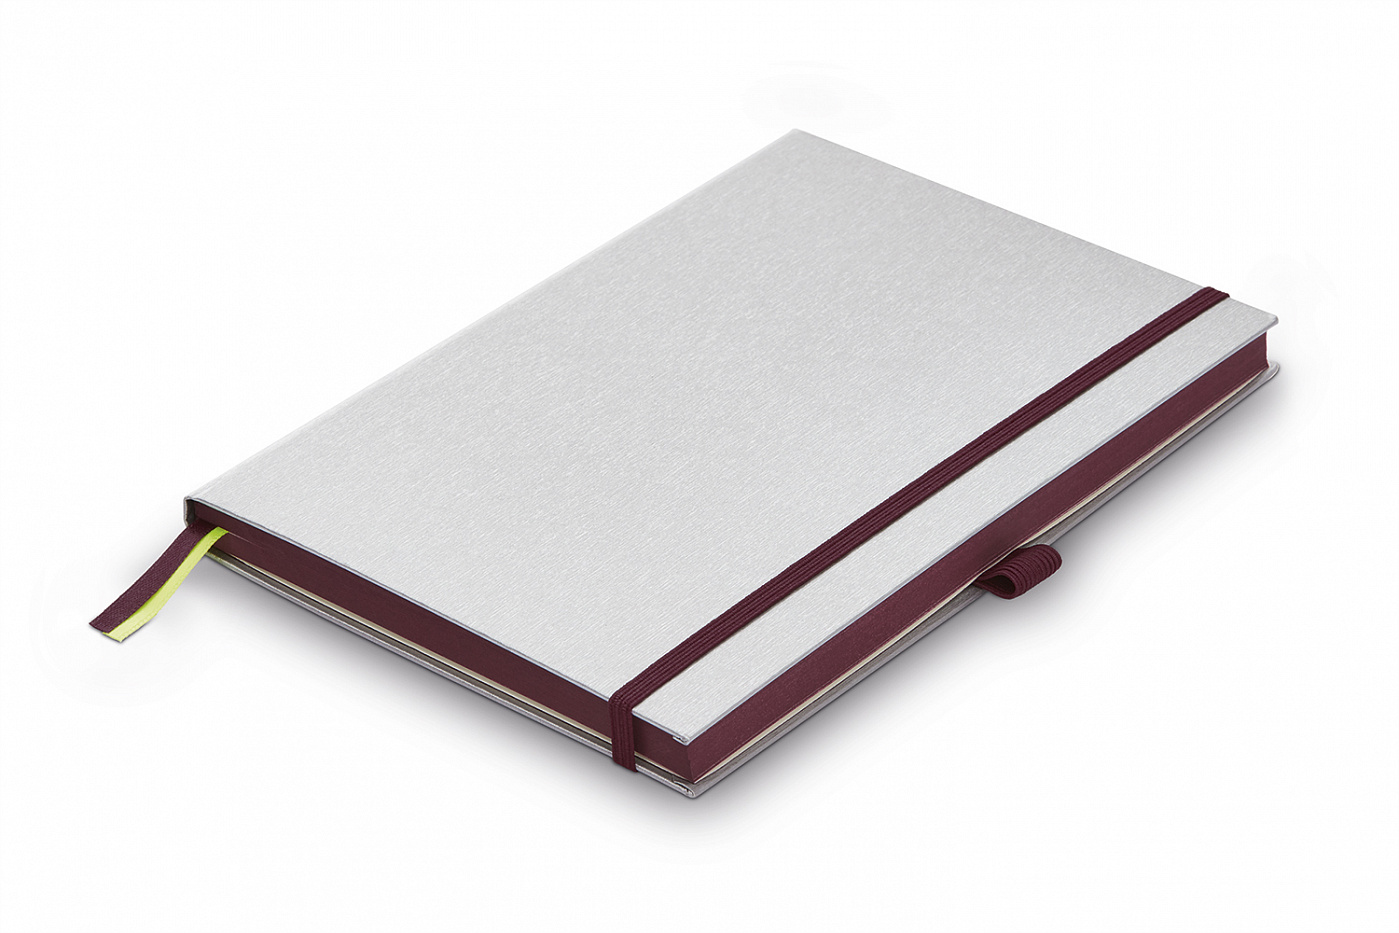 Записная книжка LAMY А6 192 стр, жесткая обложка серебристого цвета, обрез пурпурный записная книжка синтетическая бумага серебряная 120 листов а5